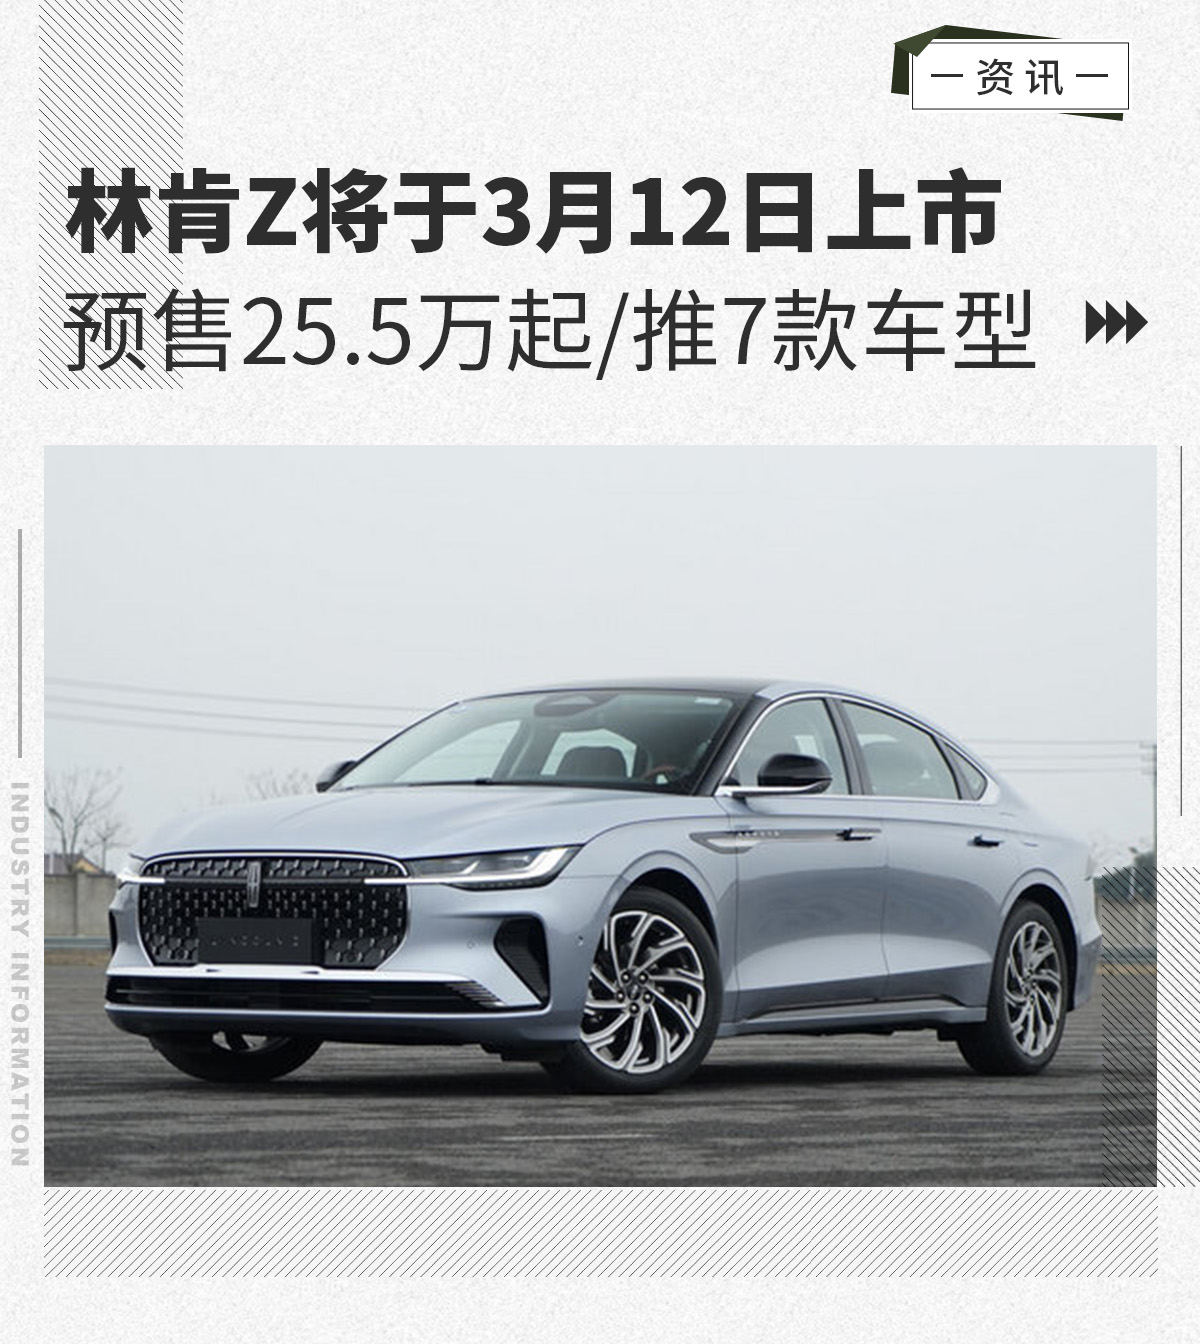 预售25.5万起/推7款车型 林肯Z将于3月12日上市